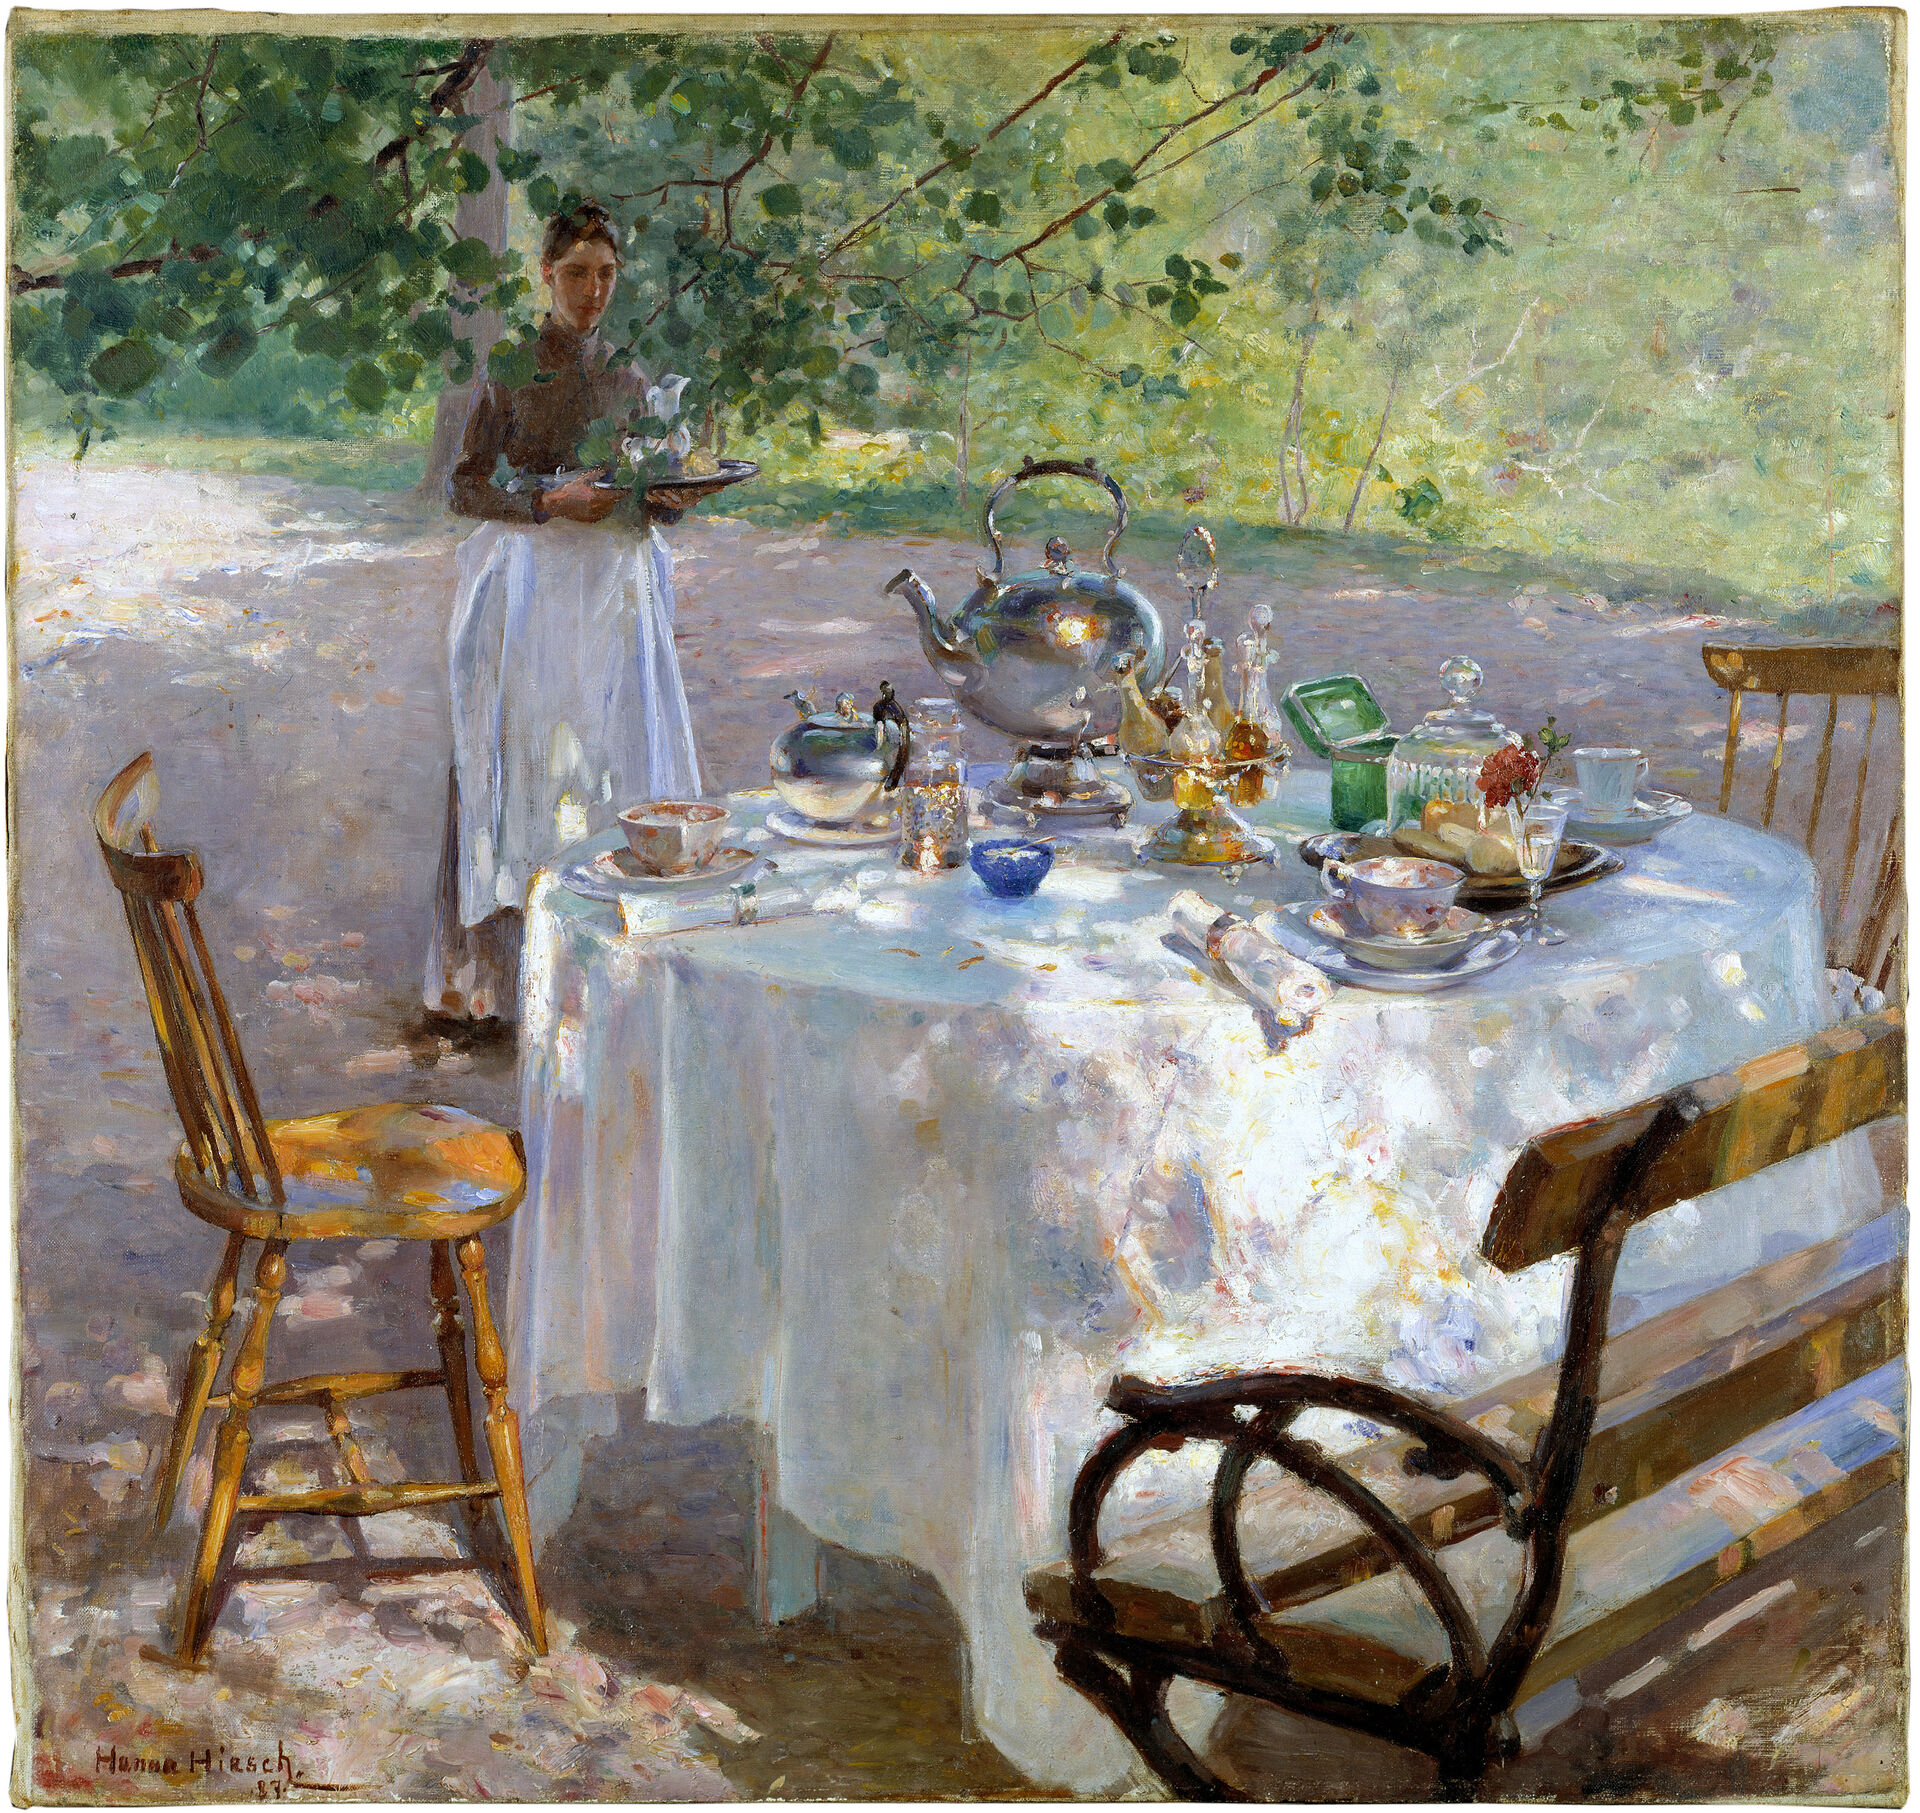 Målning av ett uppdukat bord med tekittel, koppar och glas utomhus. En kvinna med vitt förkläde bär på en bricka.